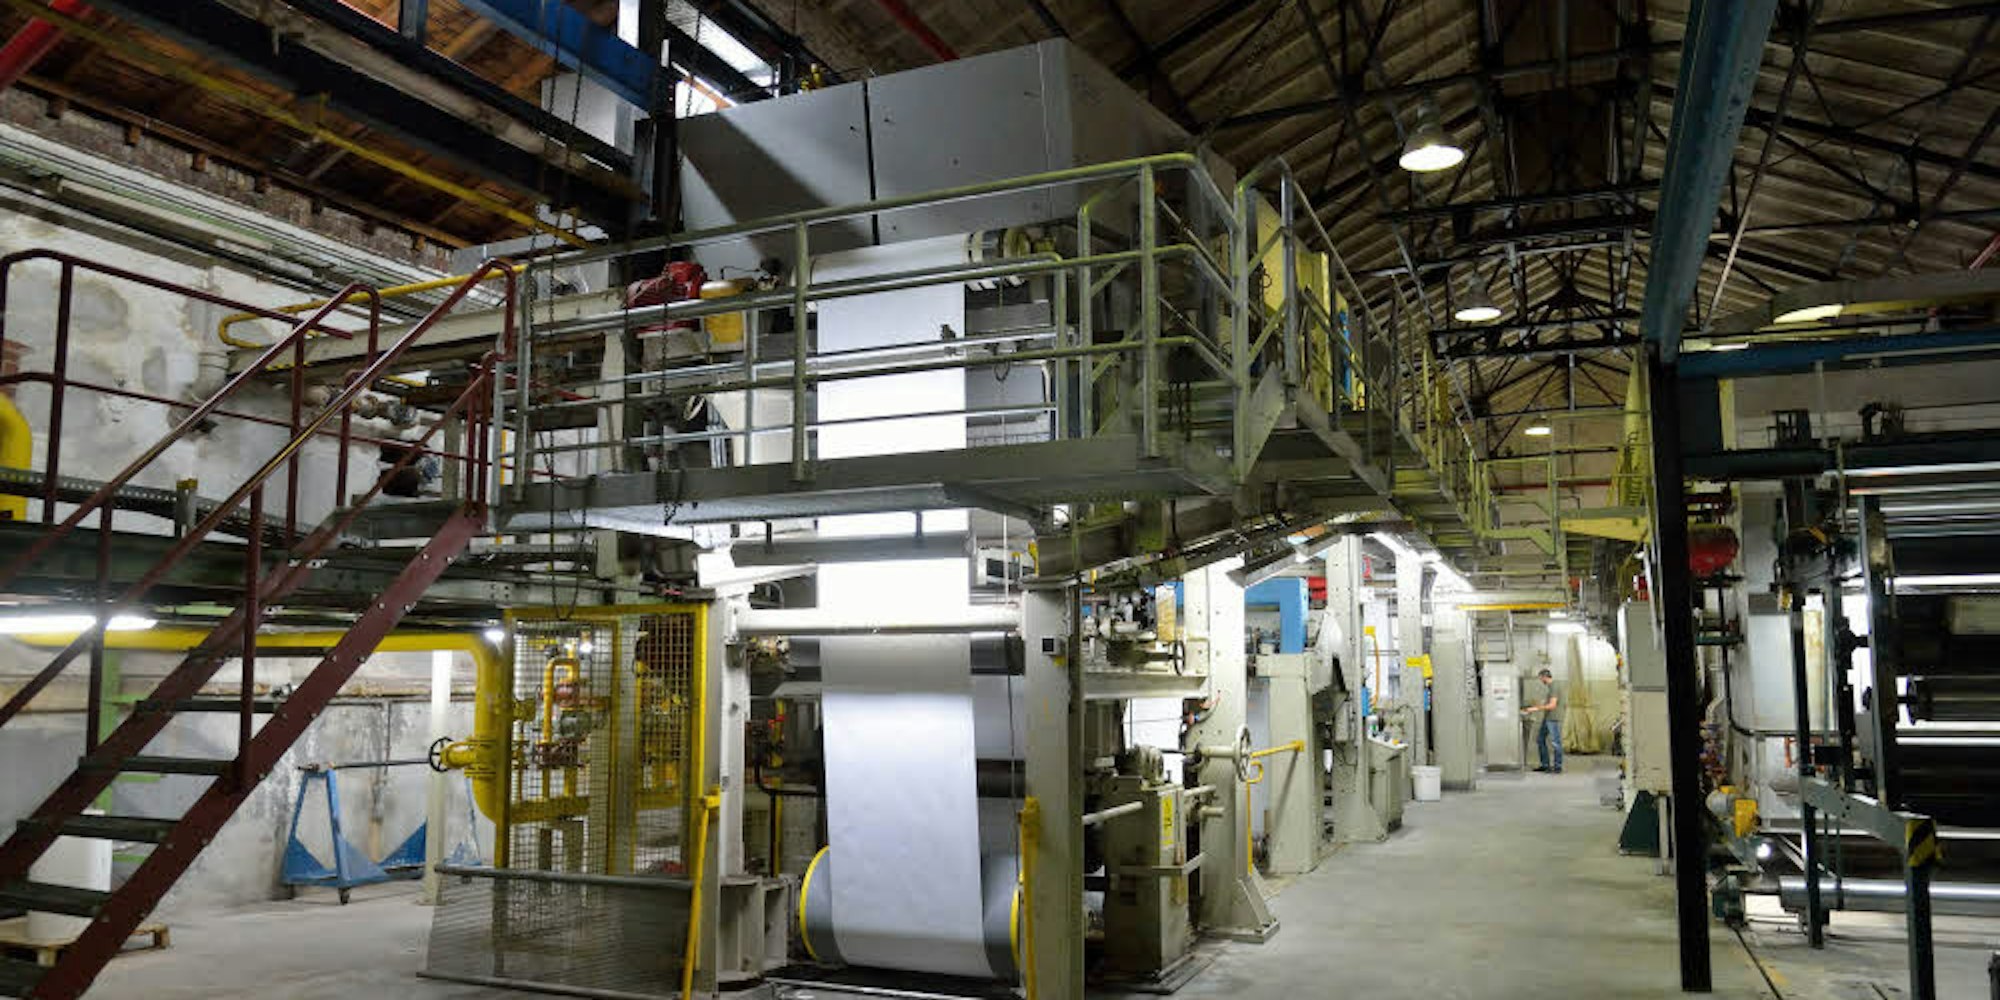 An dieser Maschine bei Zanders werden neue Papiersorten entwickelt und ausprobiert.